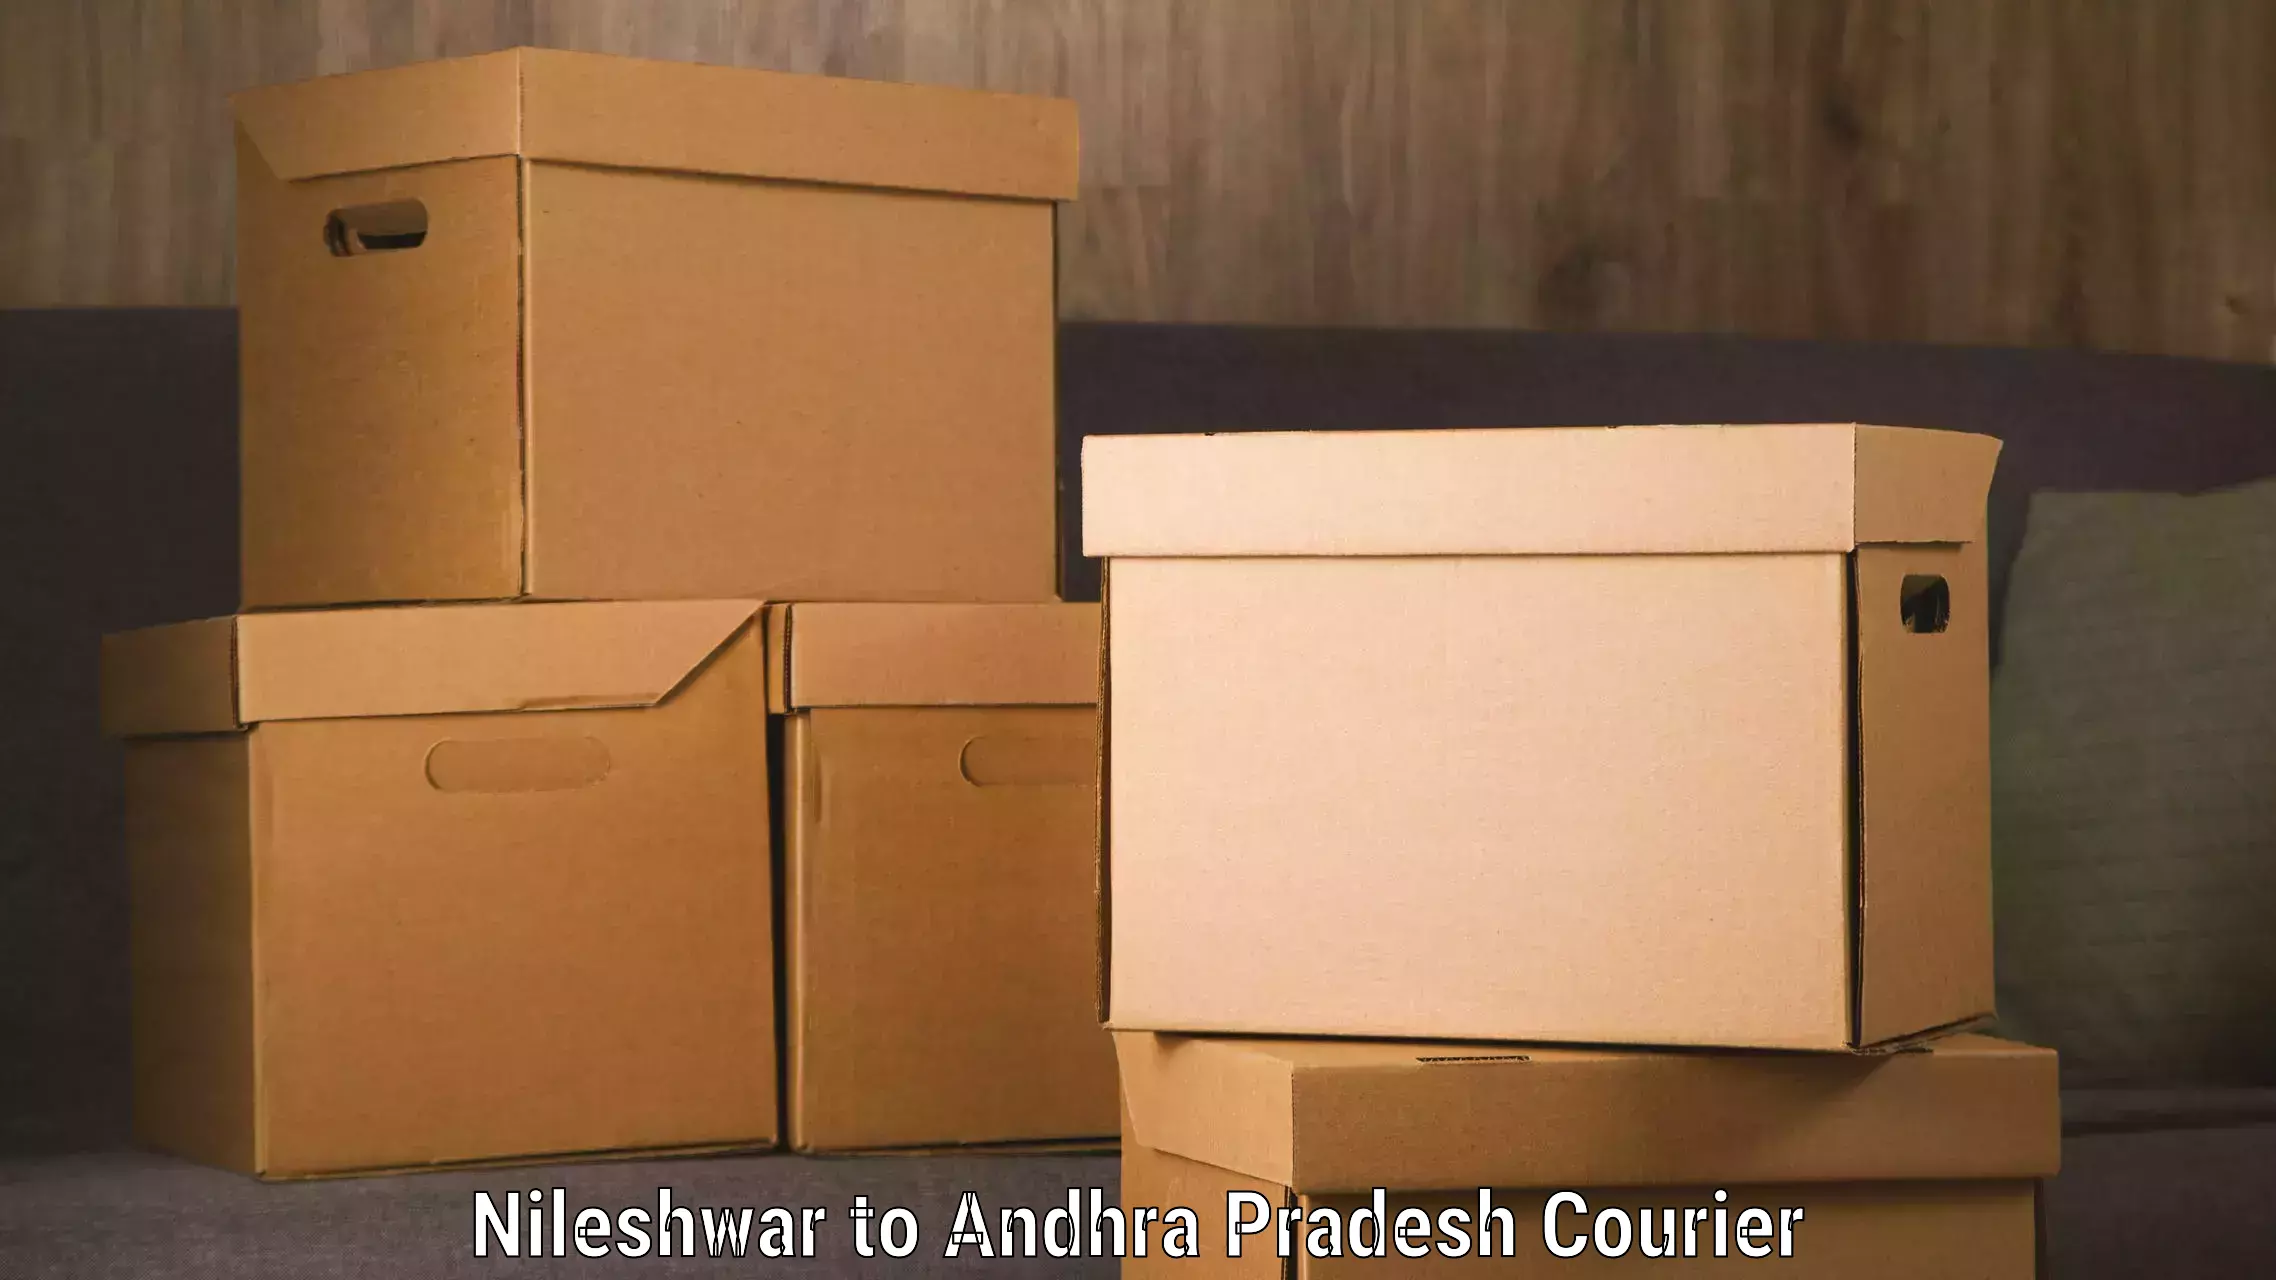 Doorstep delivery service Nileshwar to Visakhapatnam Port